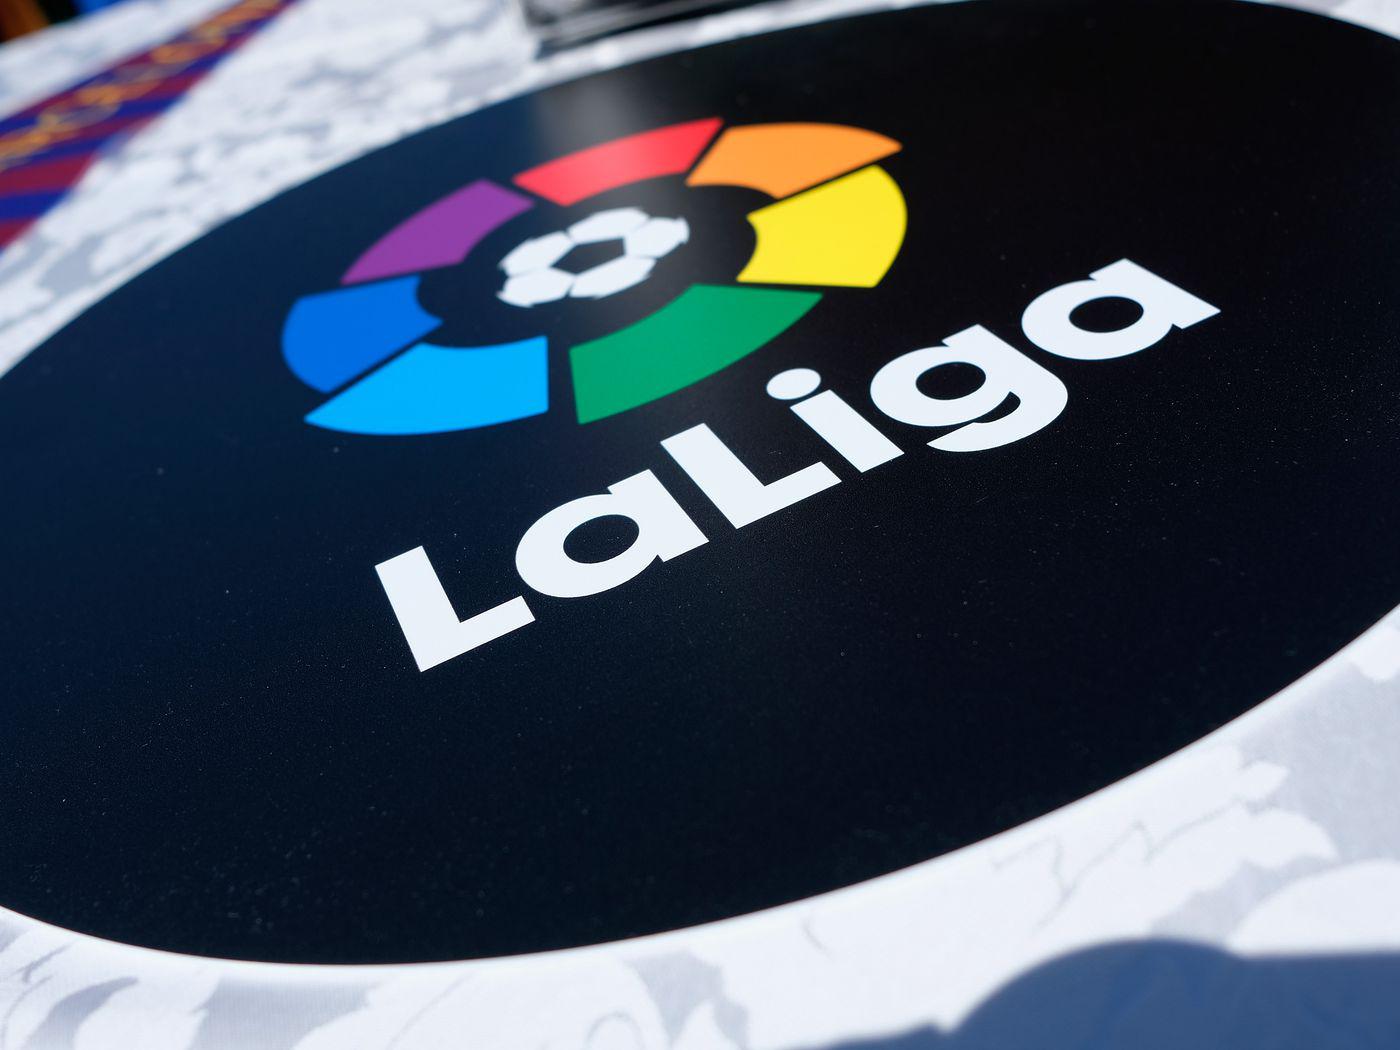 若西甲就此结束, 最终成绩将由足协与Laliga共同决定